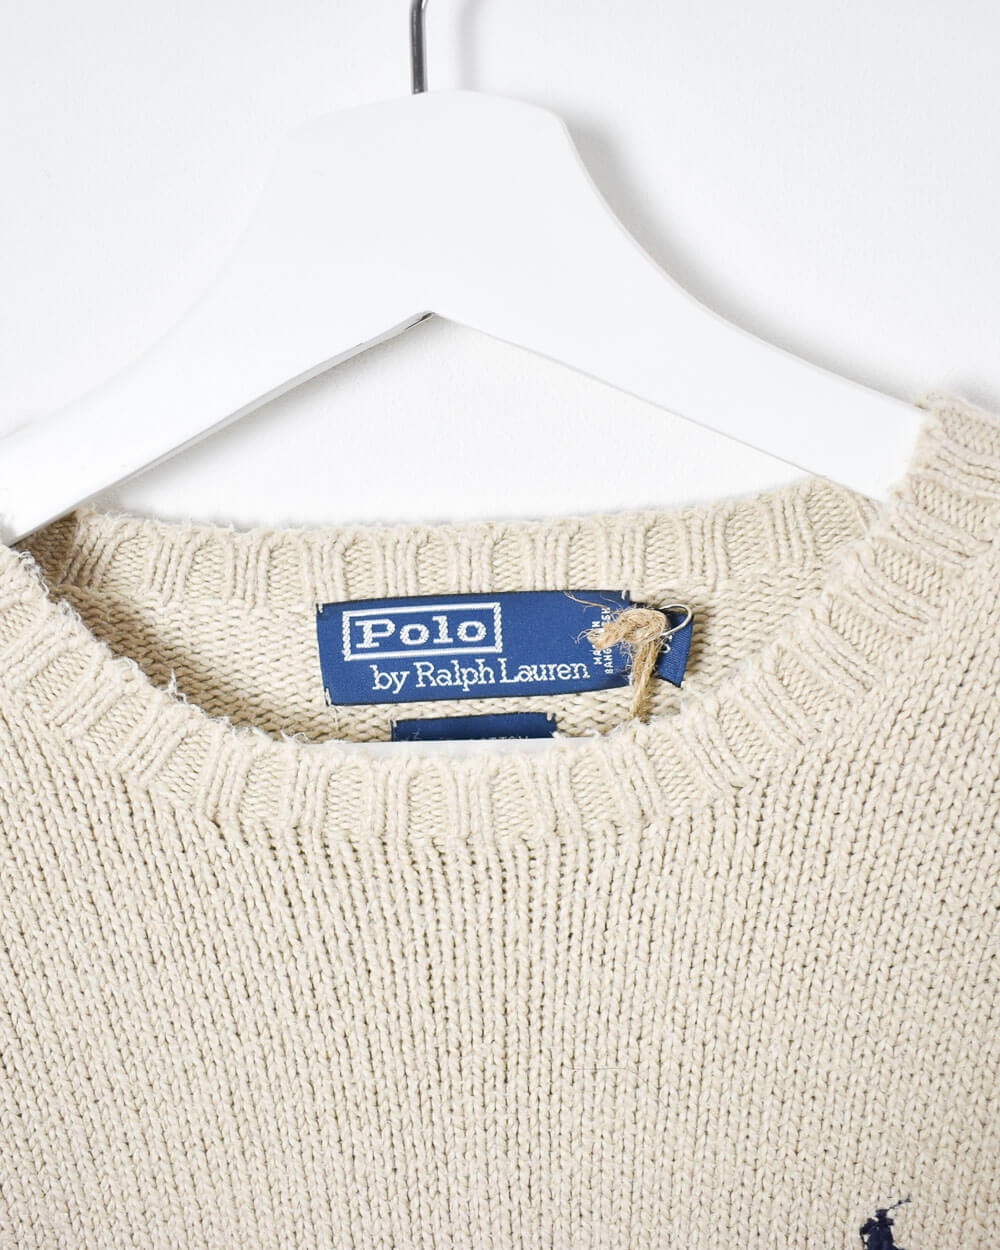 Neutral Ralph Lauren Knitted Sweatshirt - Small